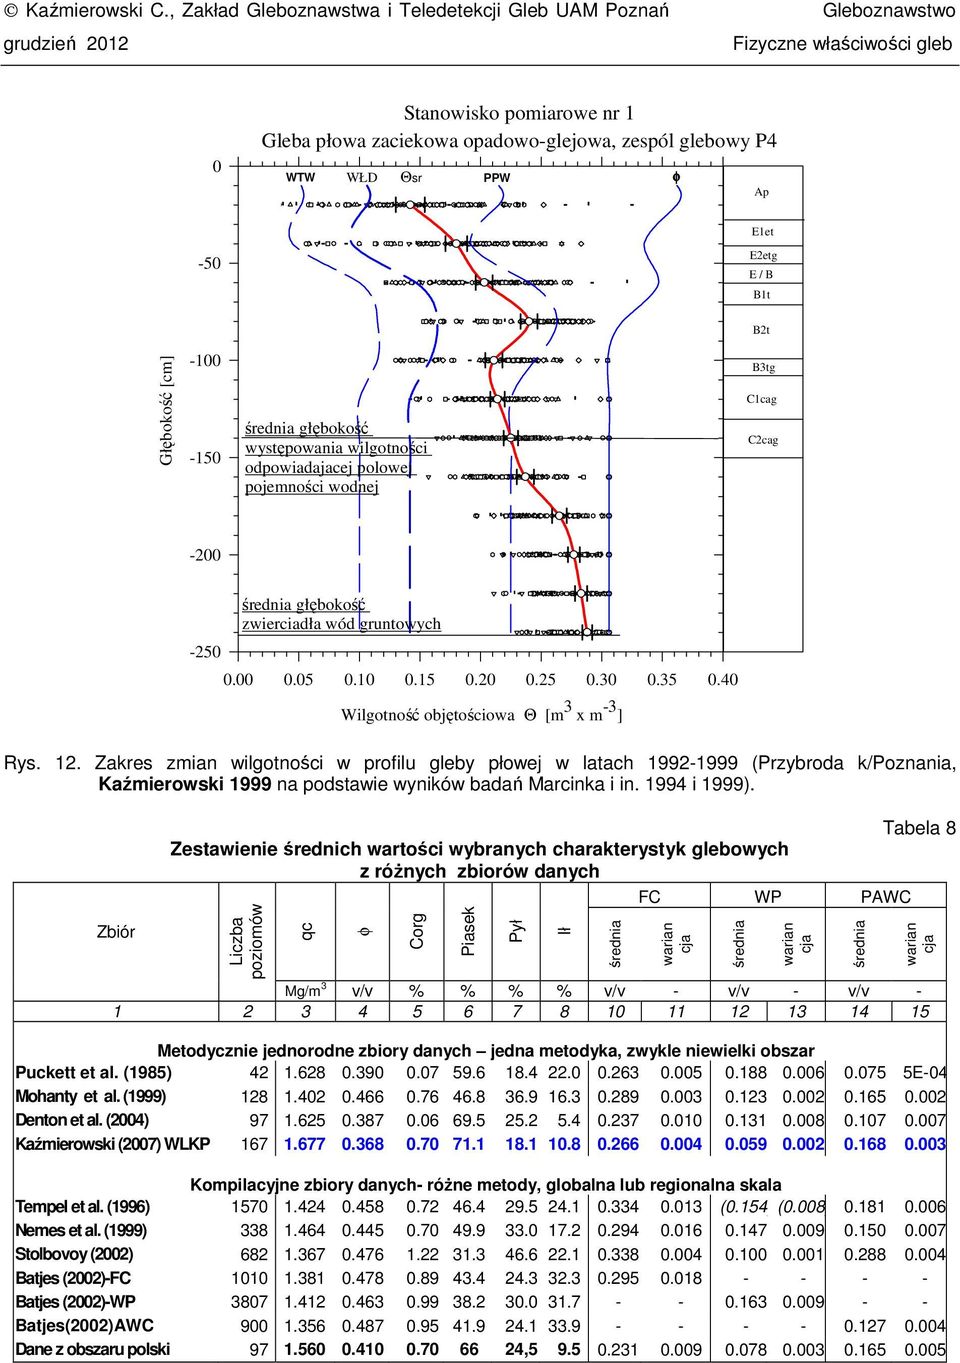 Głębokość [m] -100-150 średia głębokość wytęowaia wigotośi odowiadajaej oowej ojemośi wodej B3tg C1ag C2ag -200-250 średia głębokość zwieriadła wód grutowyh 0.00 0.05 0.10 0.15 0.20 0.25 0.30 0.35 0.